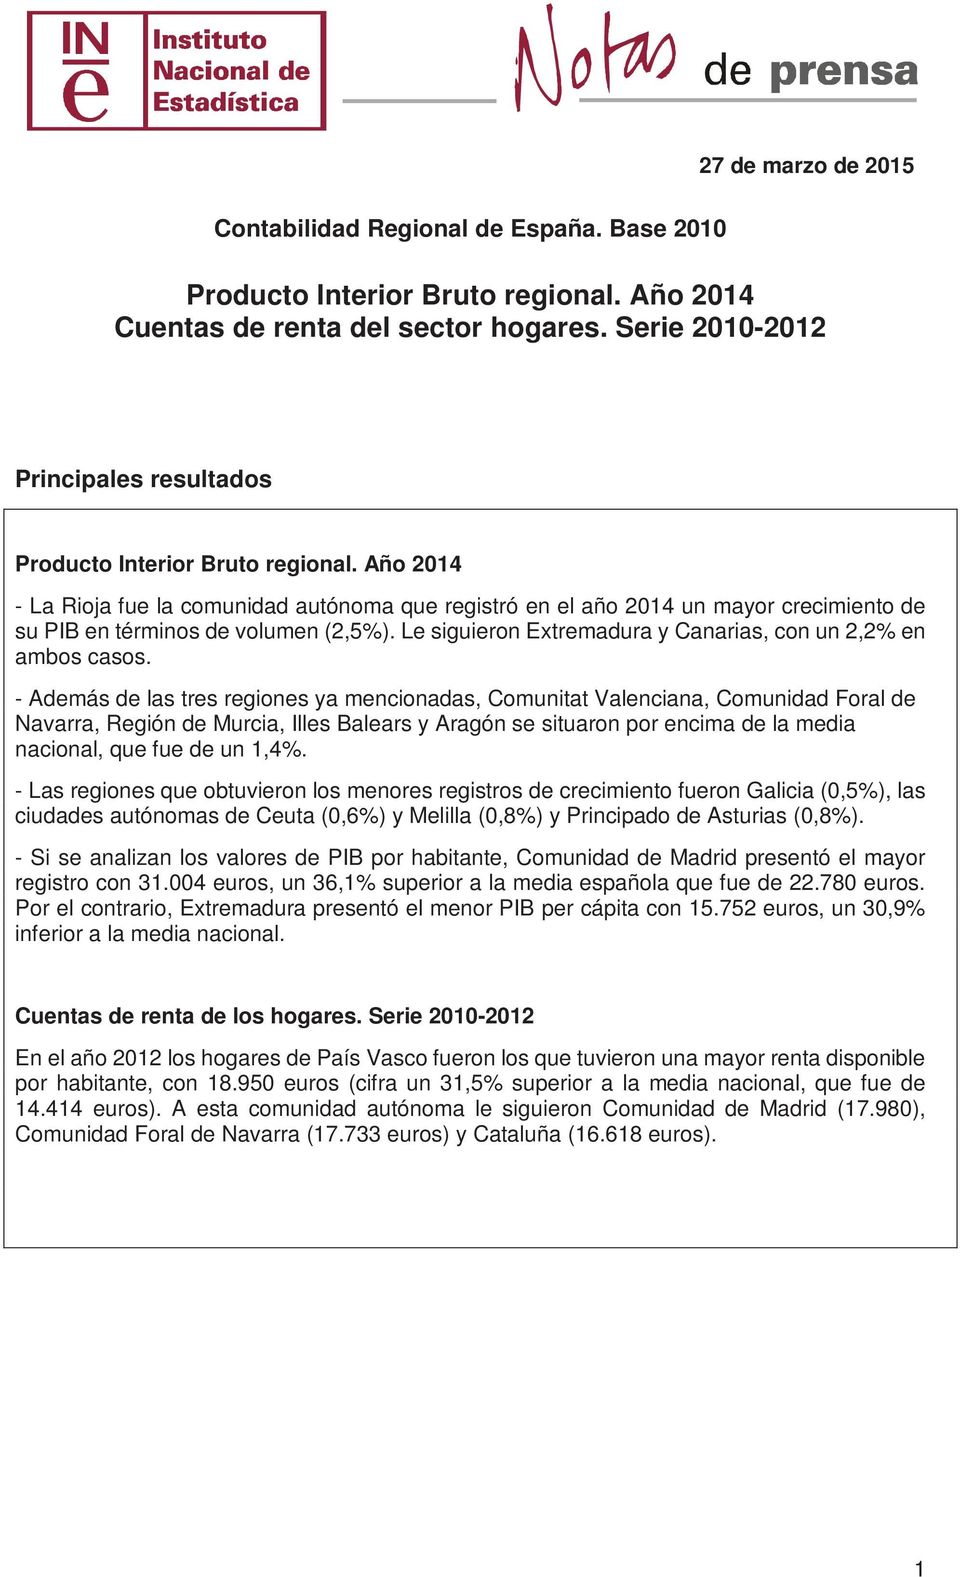 Año 2014 - La Rioja fue la comunidad autónoma que registró en el año 2014 un mayor crecimiento de su PIB en términos de volumen (2,5%). Le siguieron y, con un 2,2% en ambos casos.